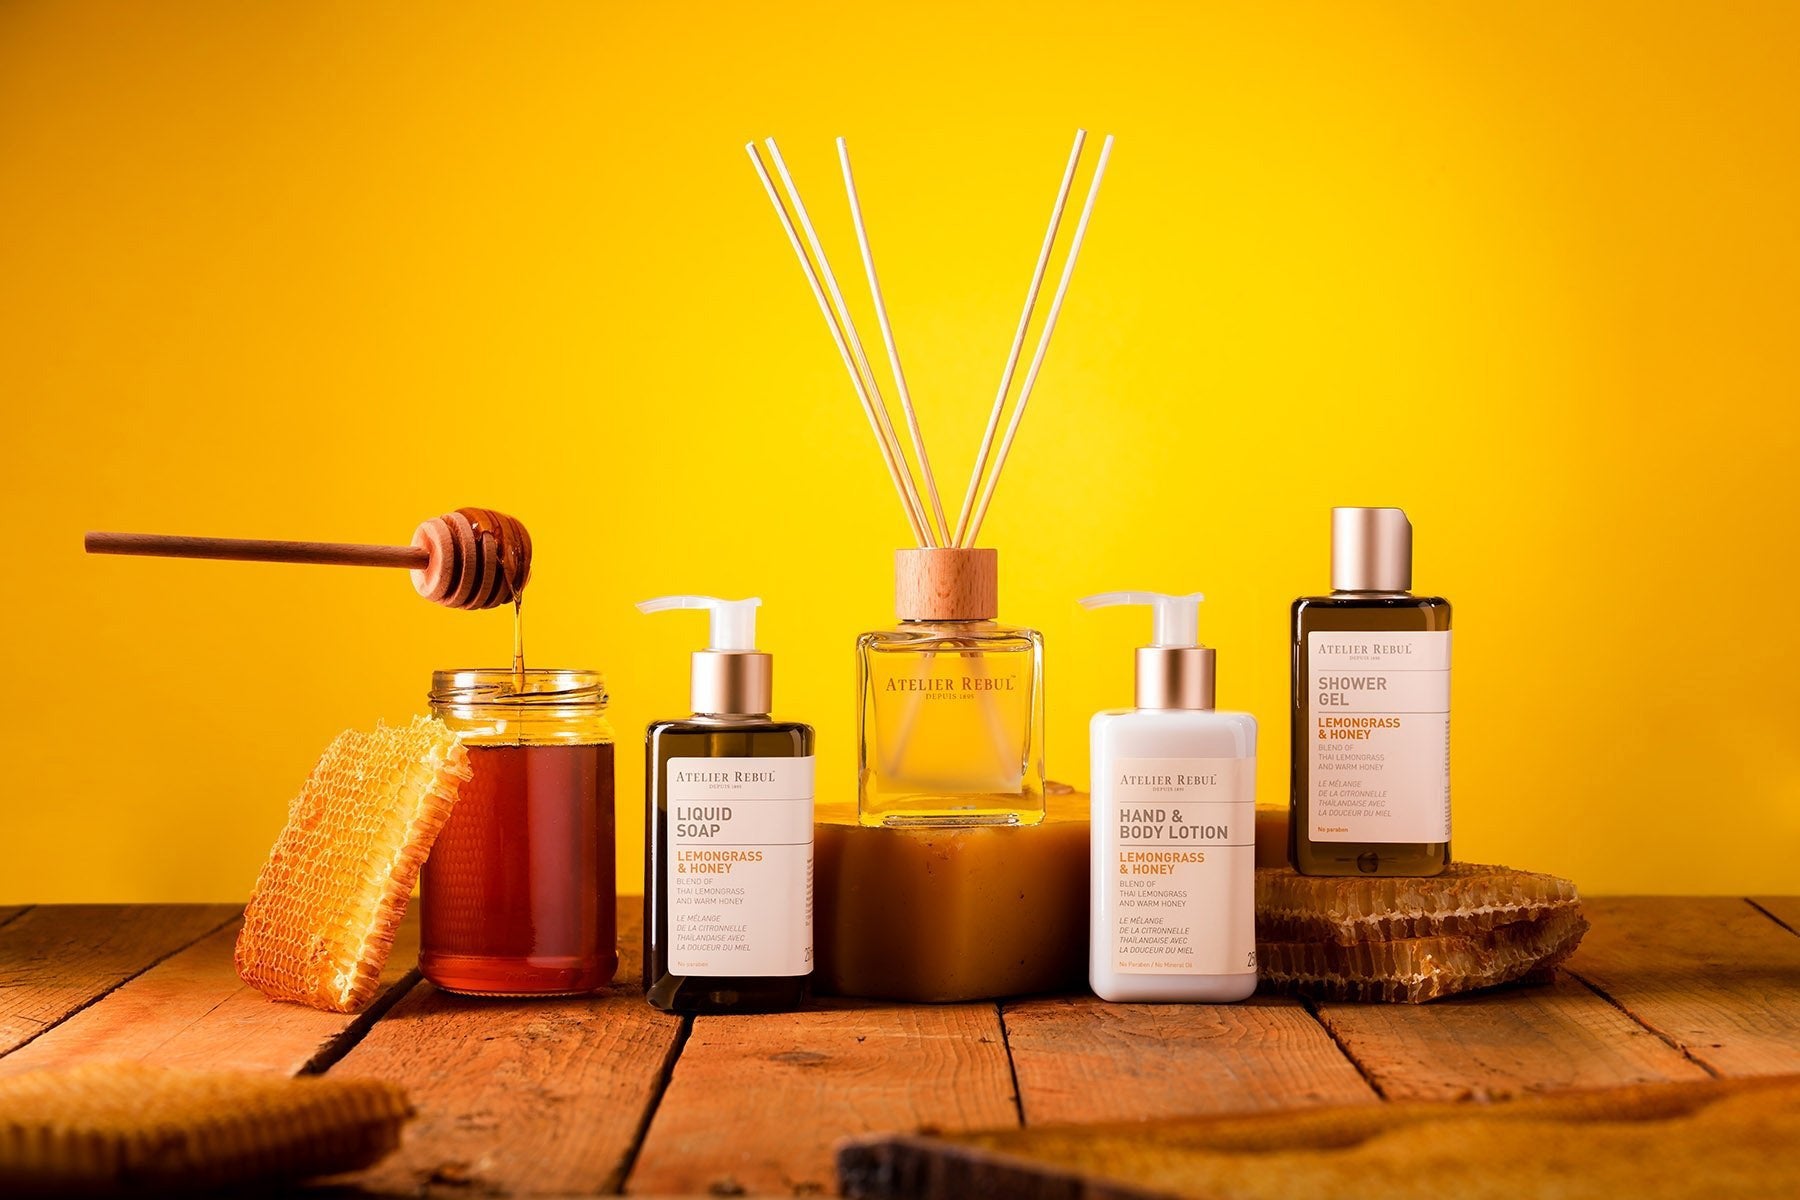 auf holz stehen produkte von atelier rebul  Lemongrass und honey sowie hoing der hintergrund ist gelb 